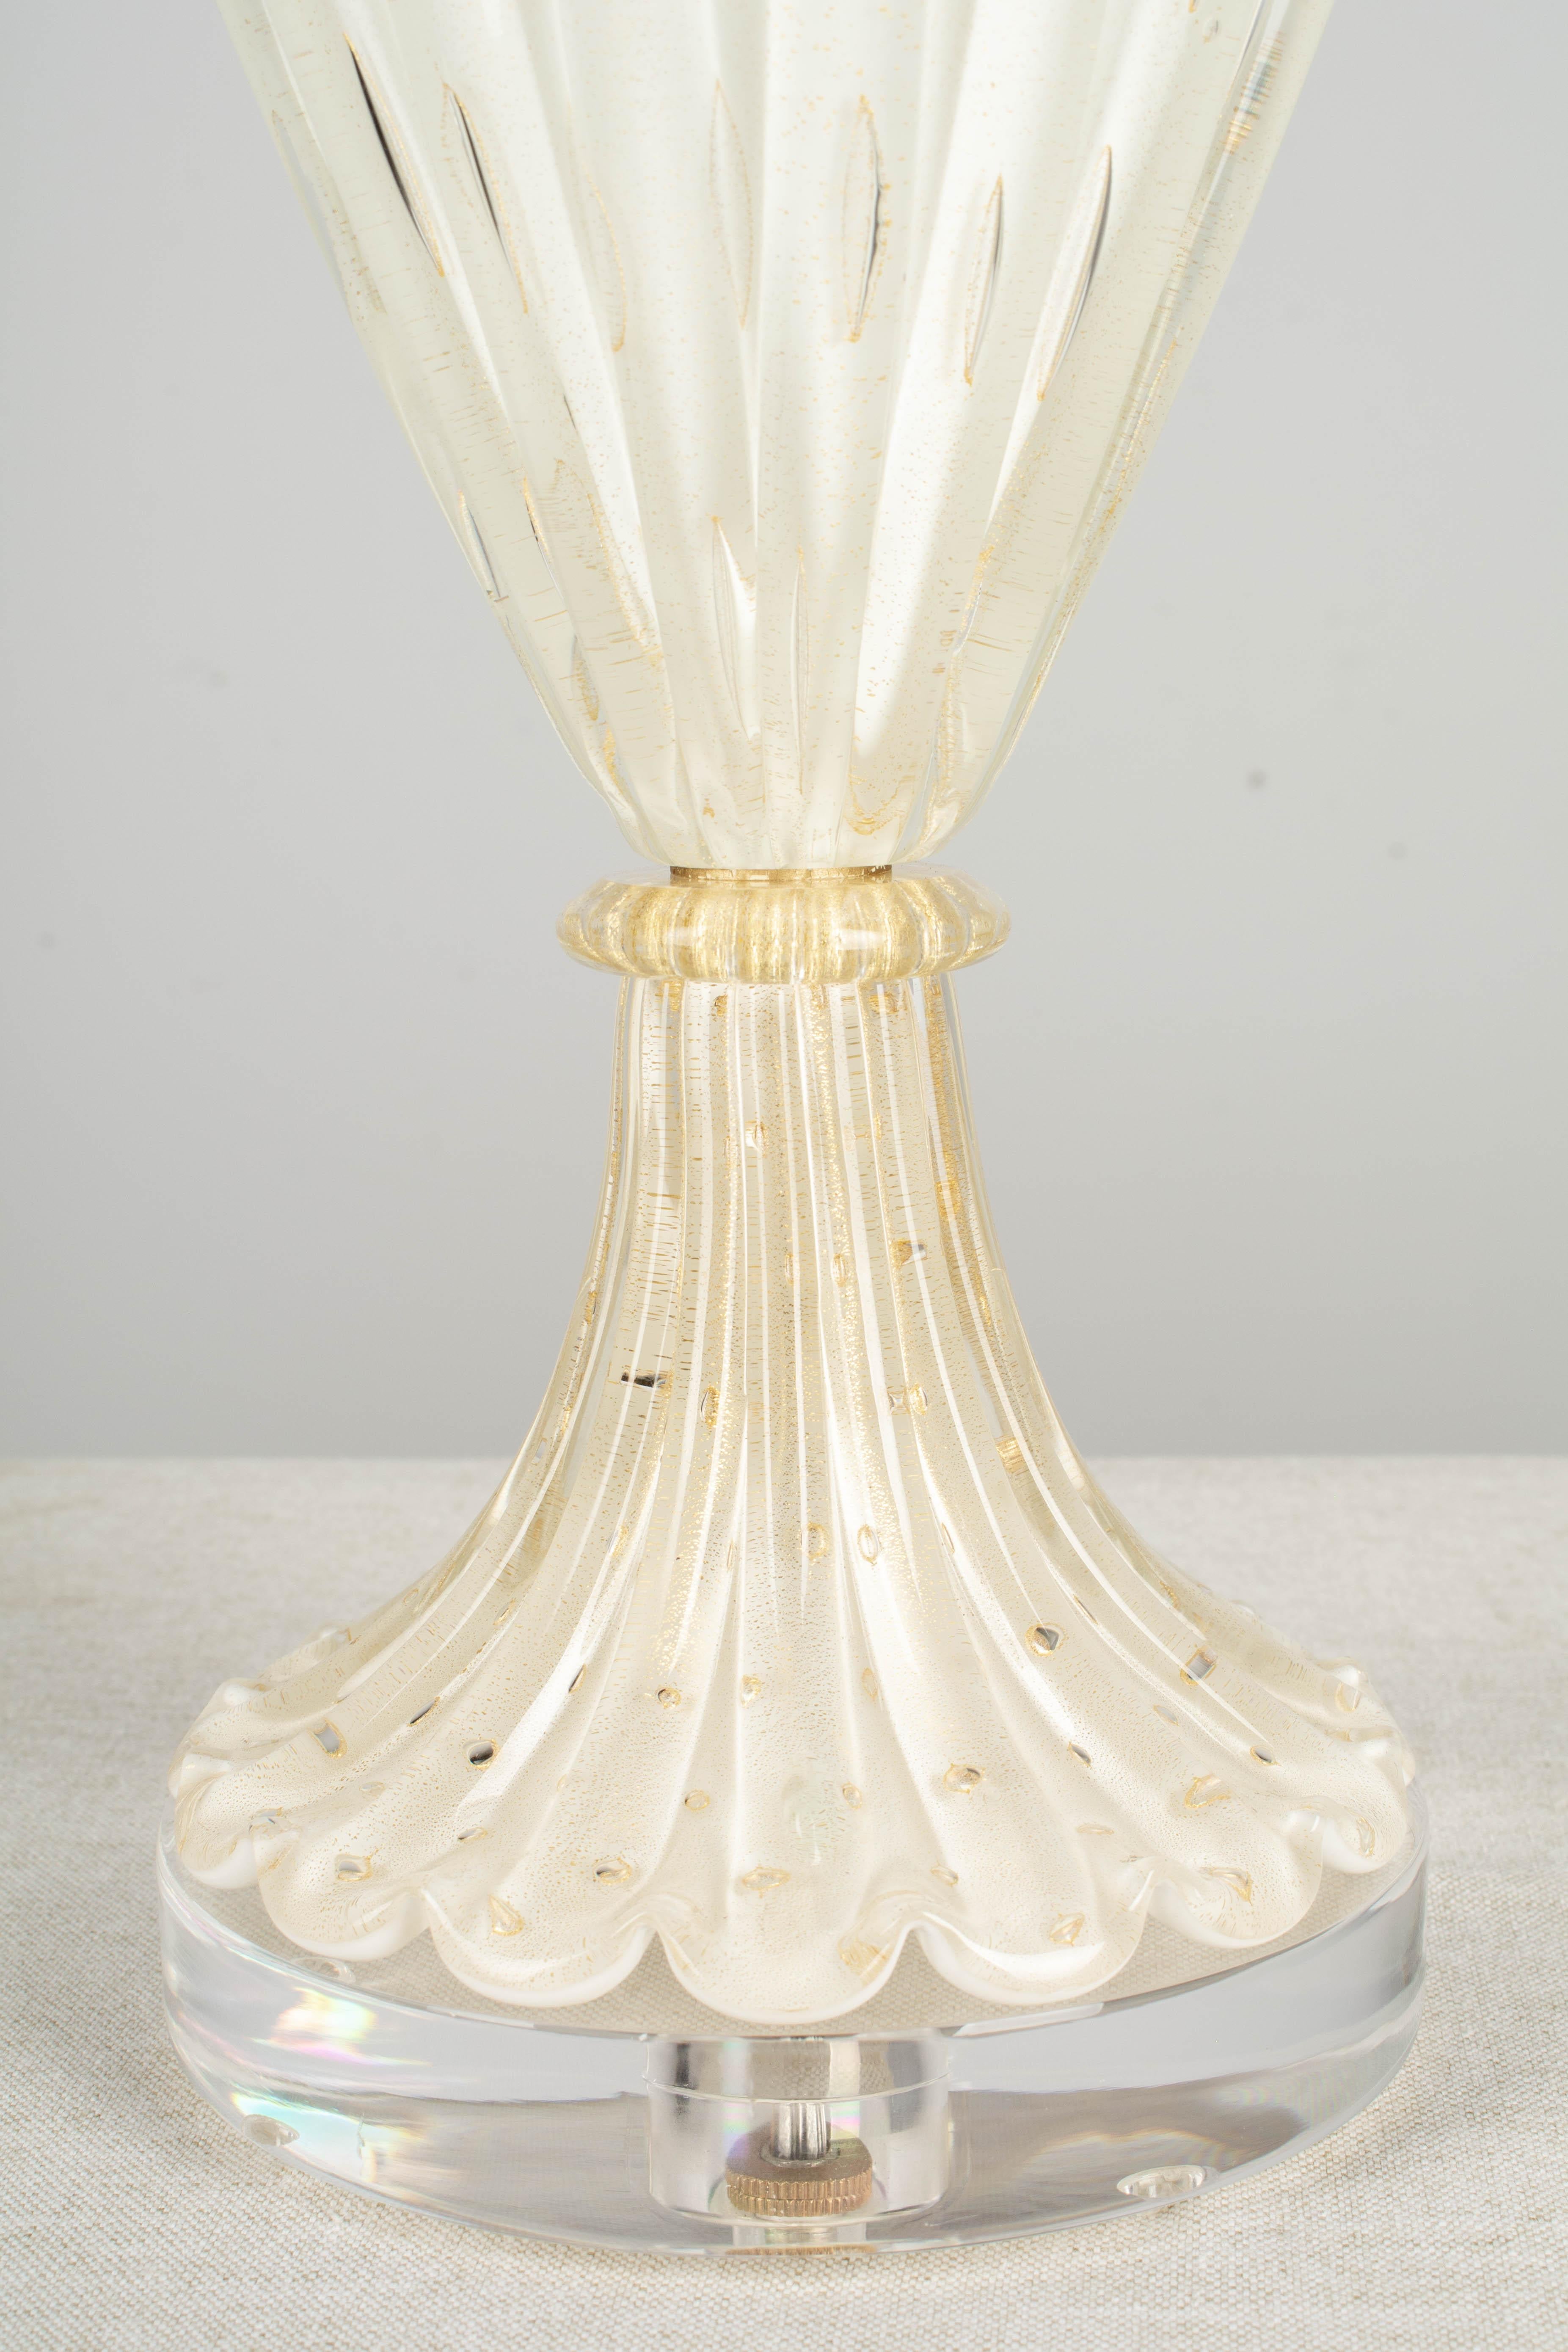 20th Century Midcentury Barovier & Toso Murano Glass Lamp